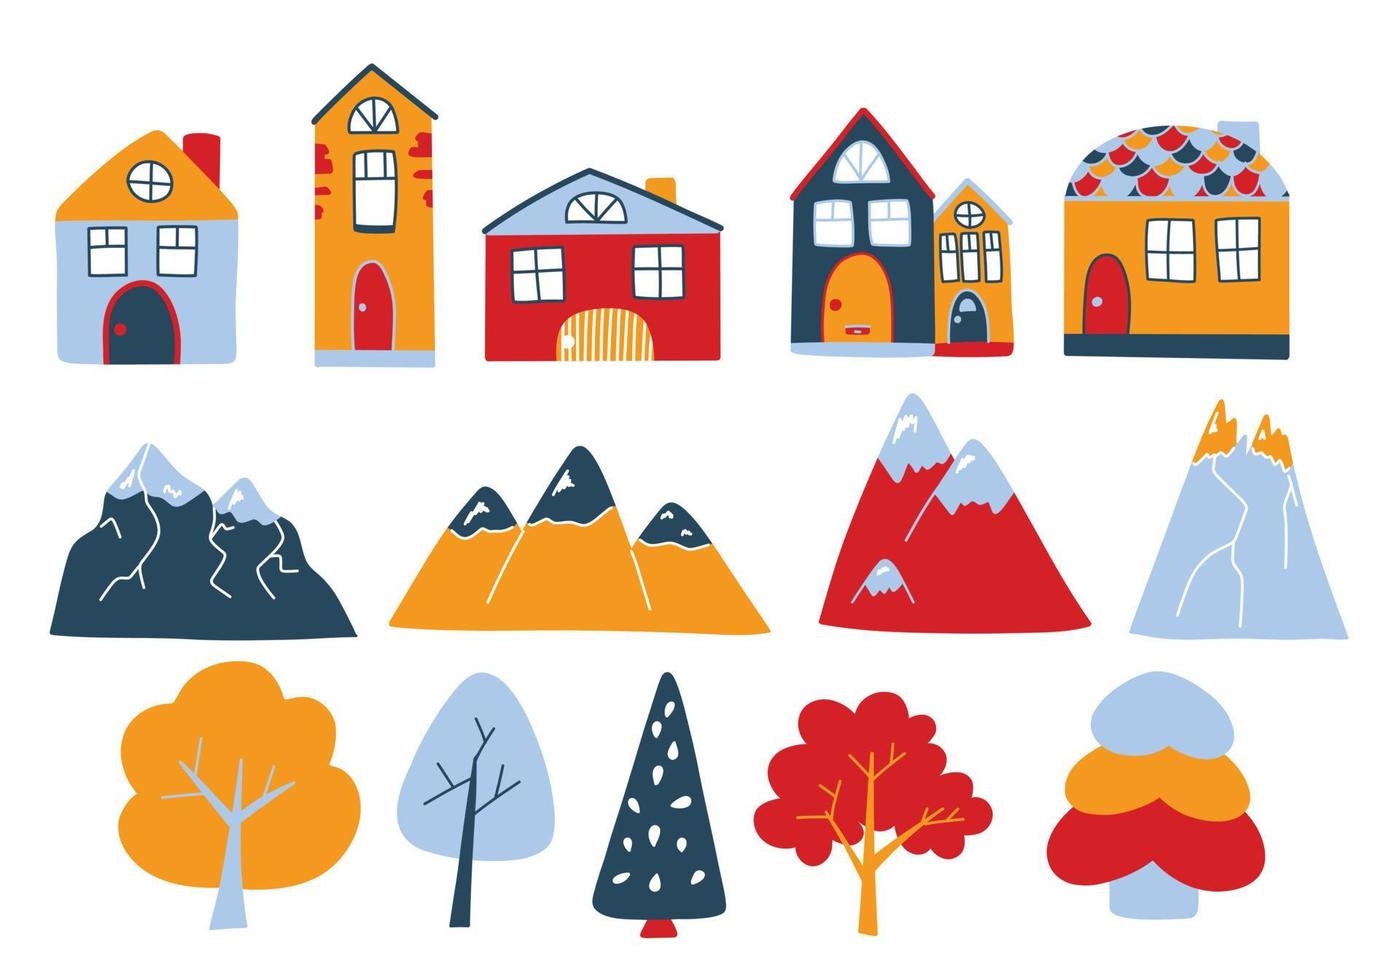 vecteur sertie de jolies maisons colorées, de montagnes et d'arbres dans un style doodle. maisons norvégiennes, sommets des montagnes. illustrations mignonnes pour cartes postales, affiches, tissus, design